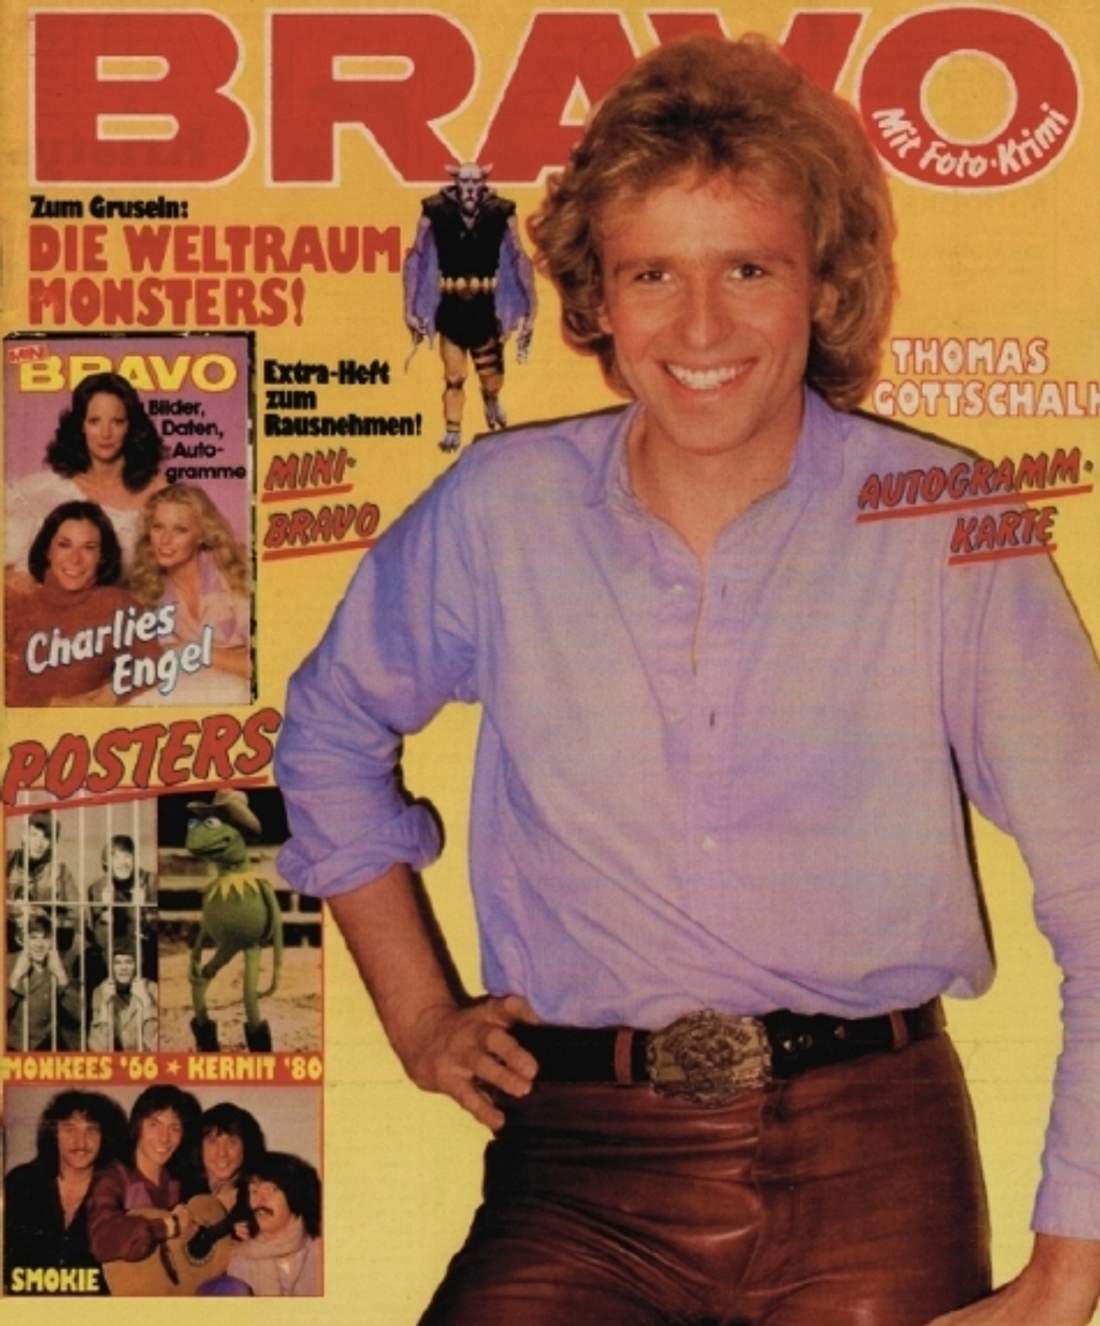 Thomas Gottschalk auf dem BRAVO-Cover (Ausgabe 22, 1980)